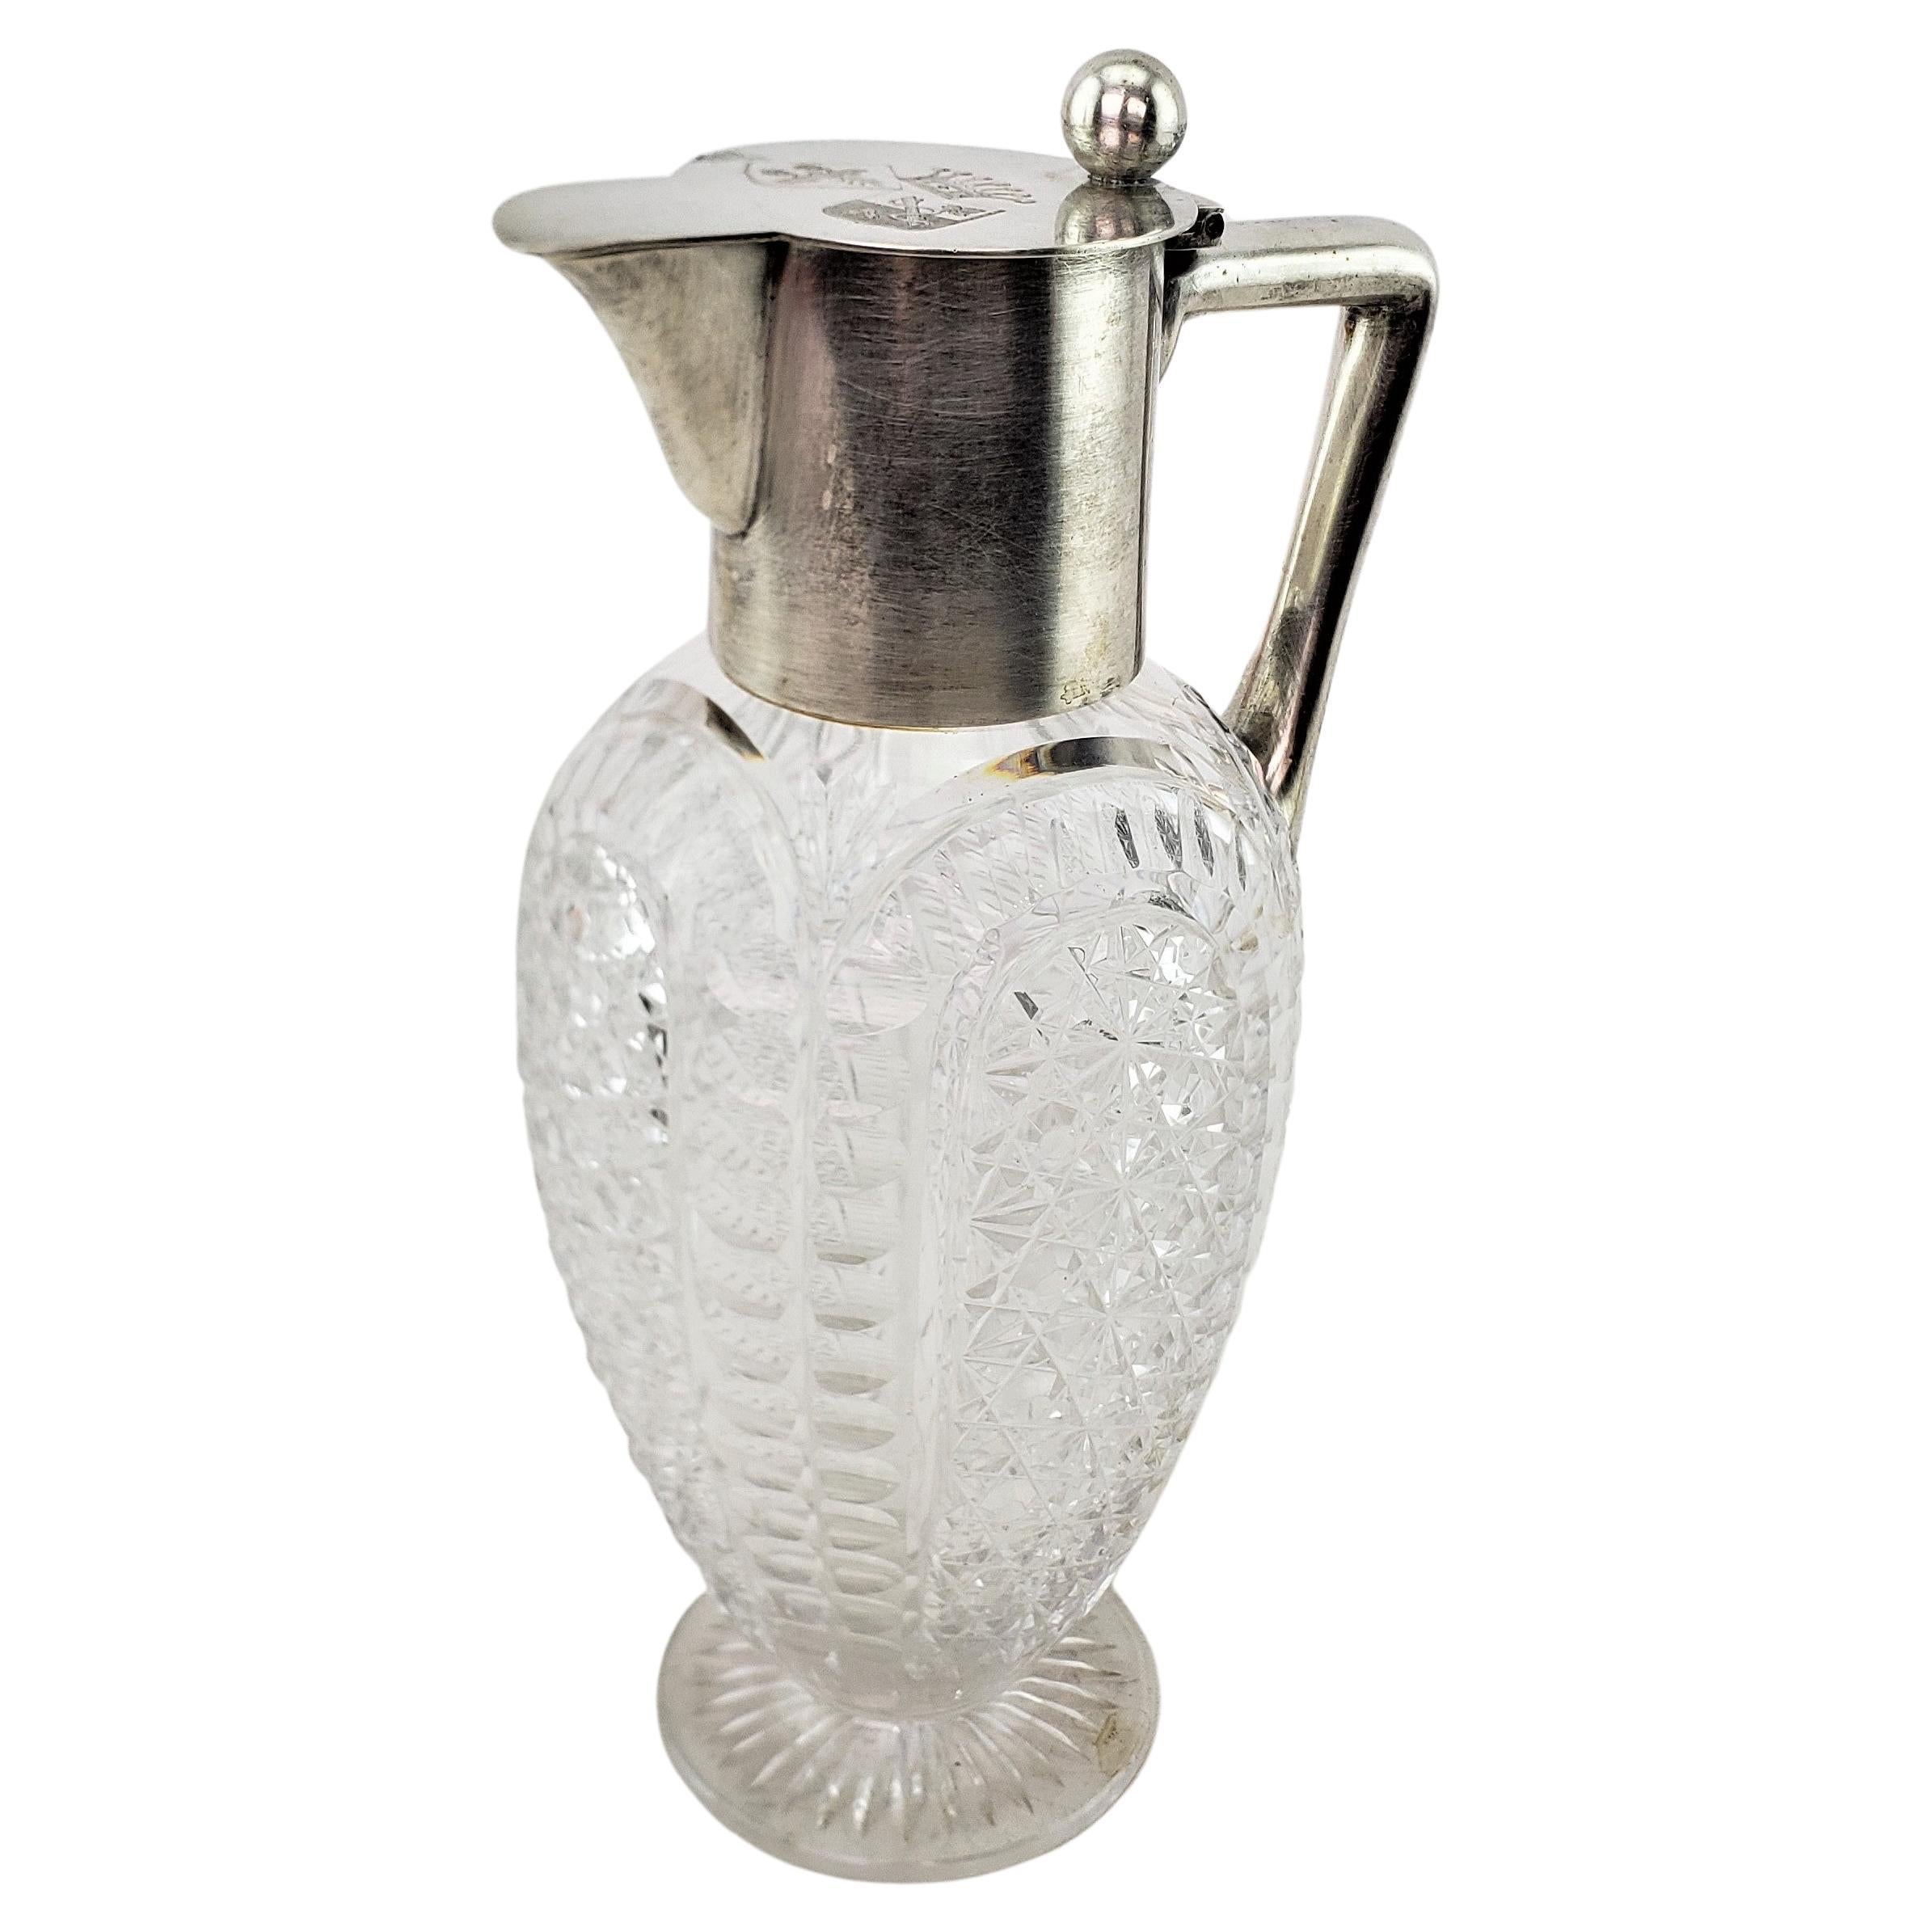 Antigua jarra o cántaro alemán de clarete de plata 800 y cristal tallado con diamantes en venta